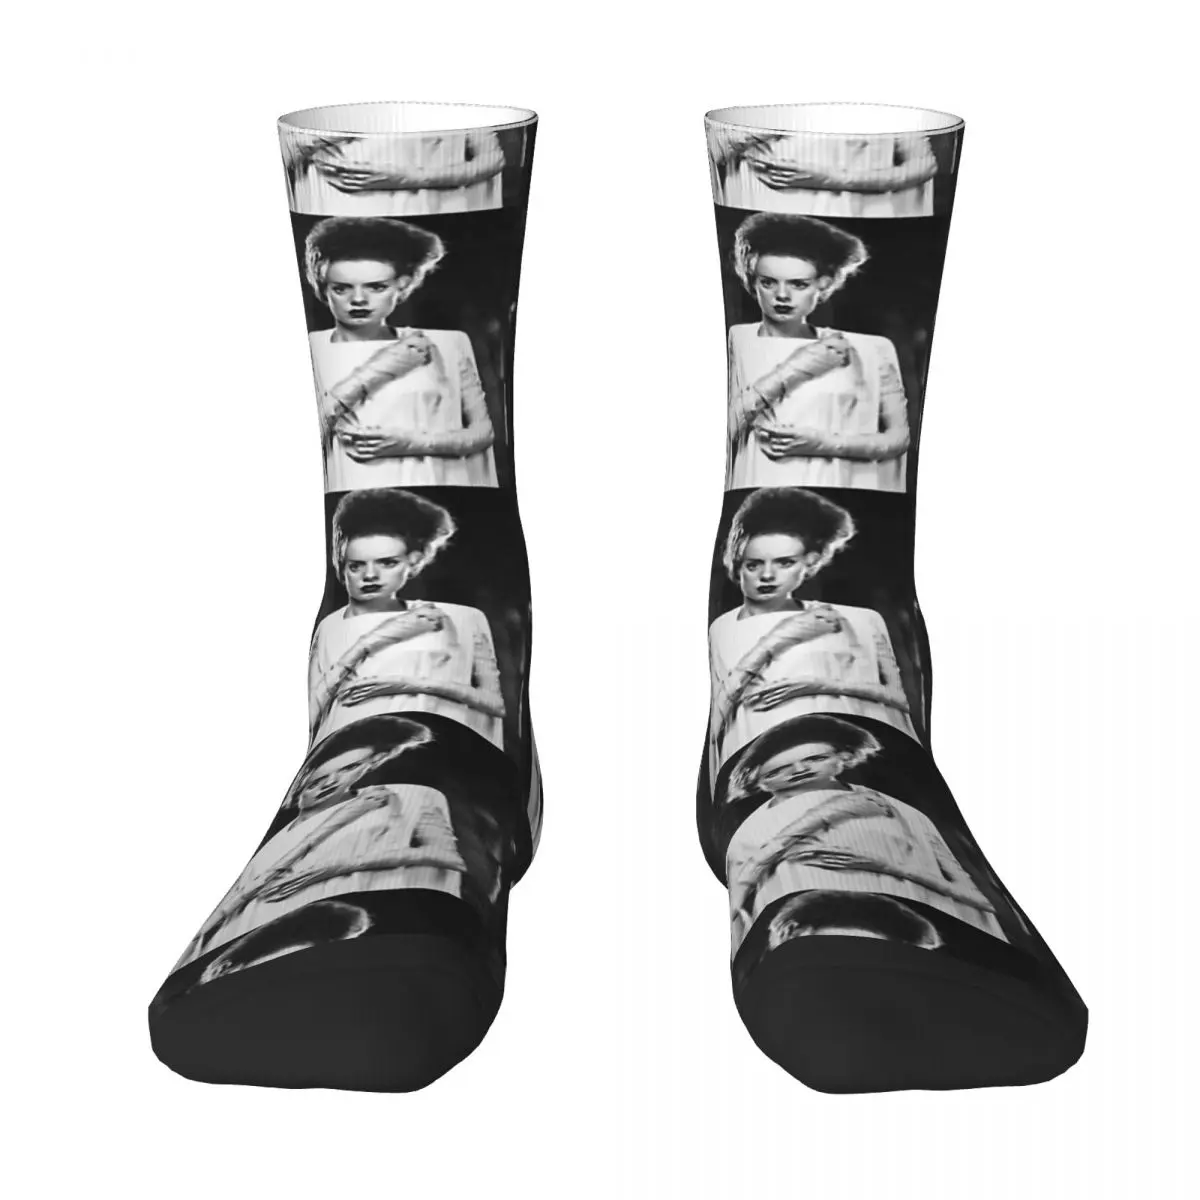 

Классические зимние носки унисекс с надписью Bride Of Frankenstein, велосипедные счастливые носки, уличный стиль, сумасшедшие носки